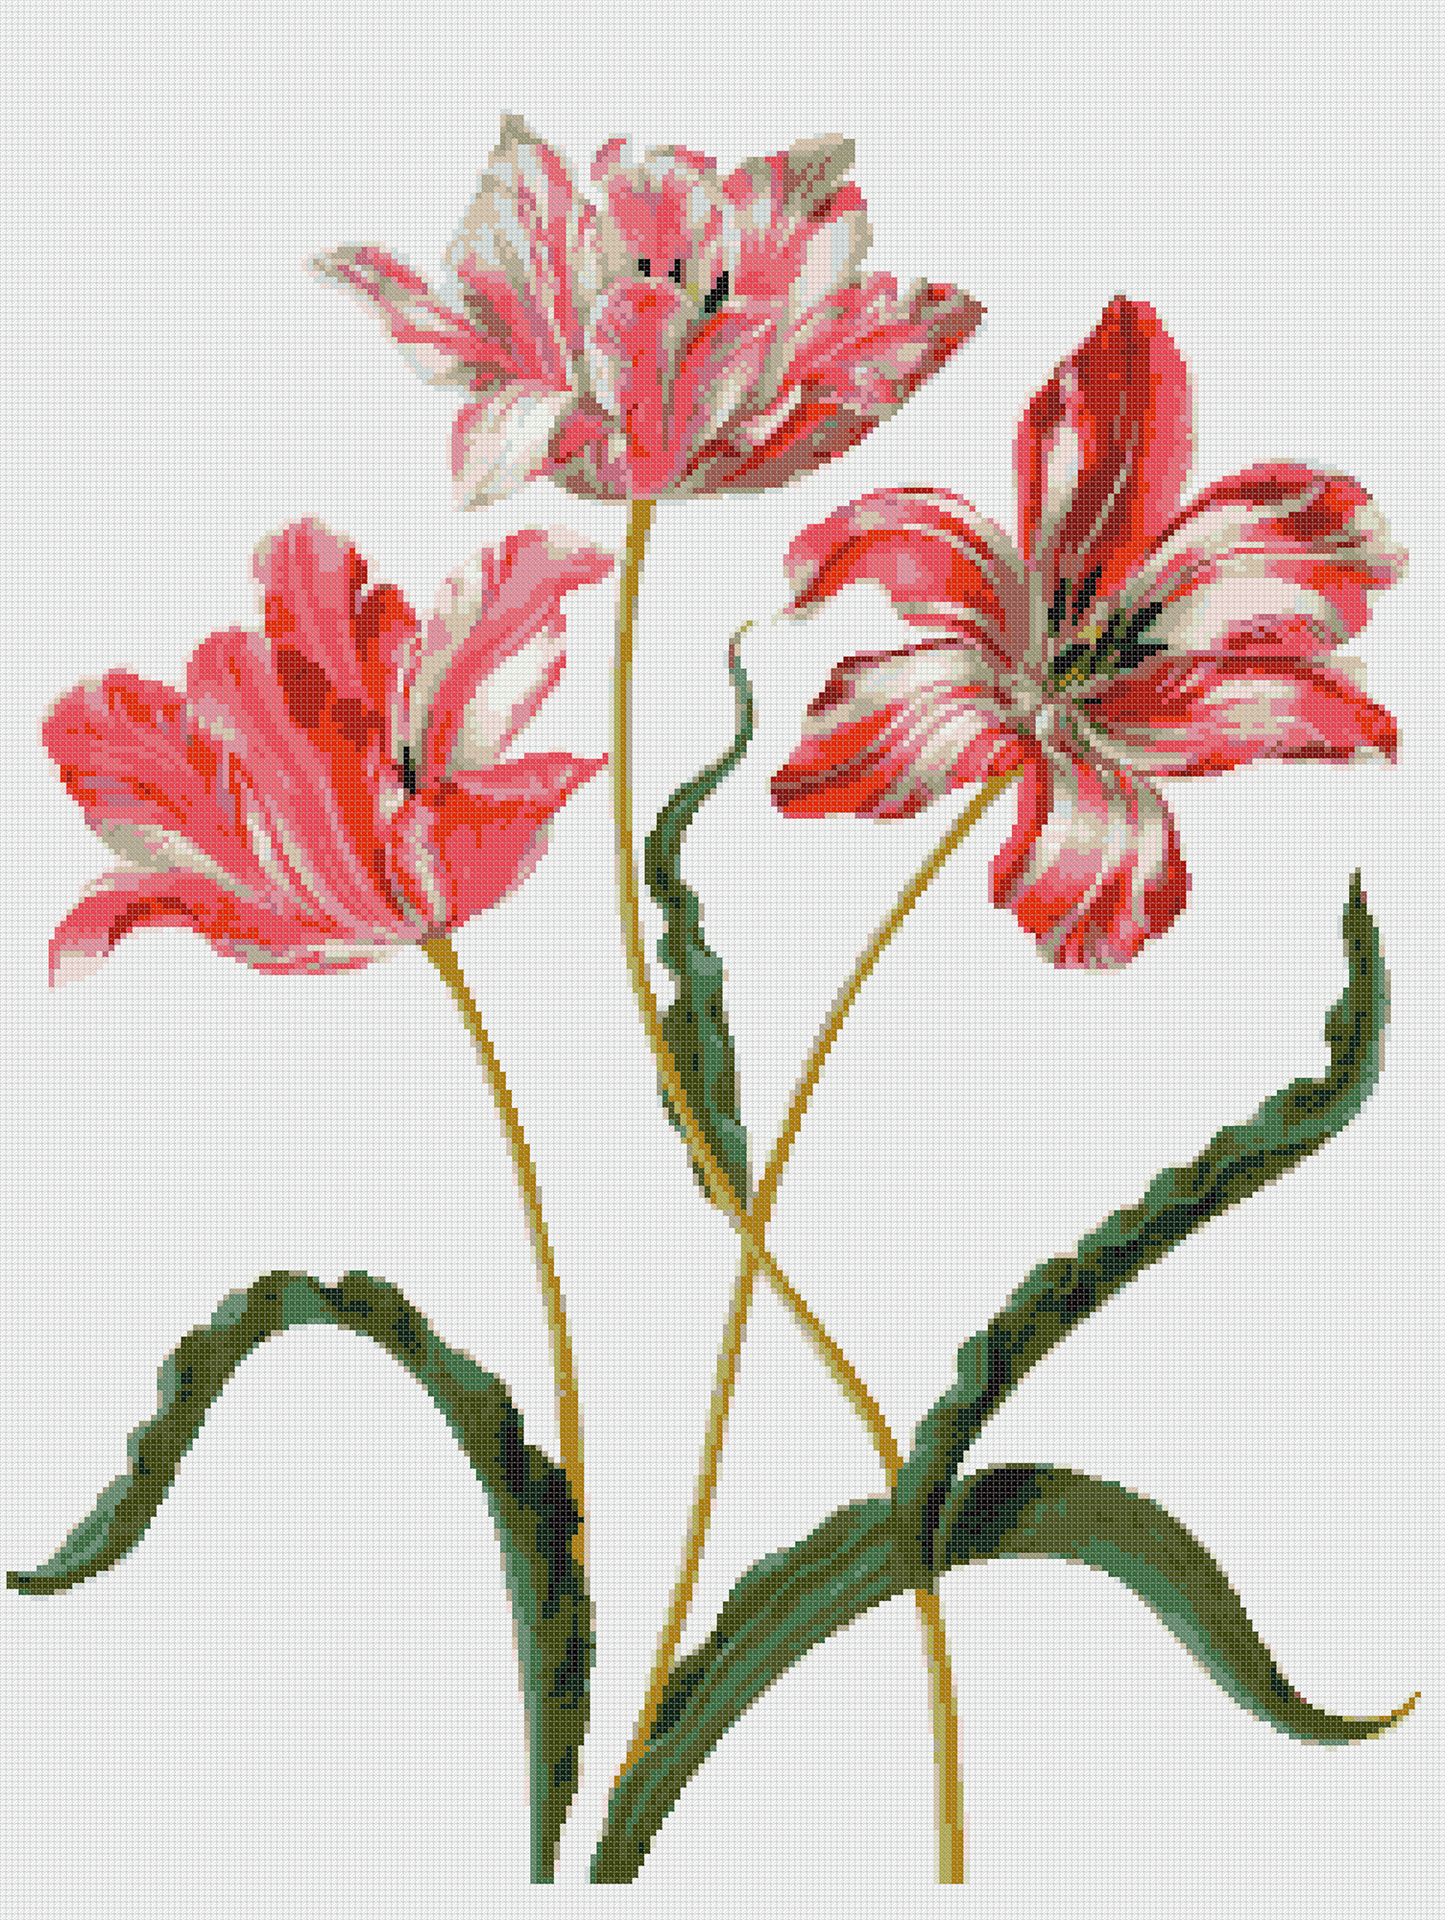 Tulpen 17. Jahrhundert nach M.S. Merian